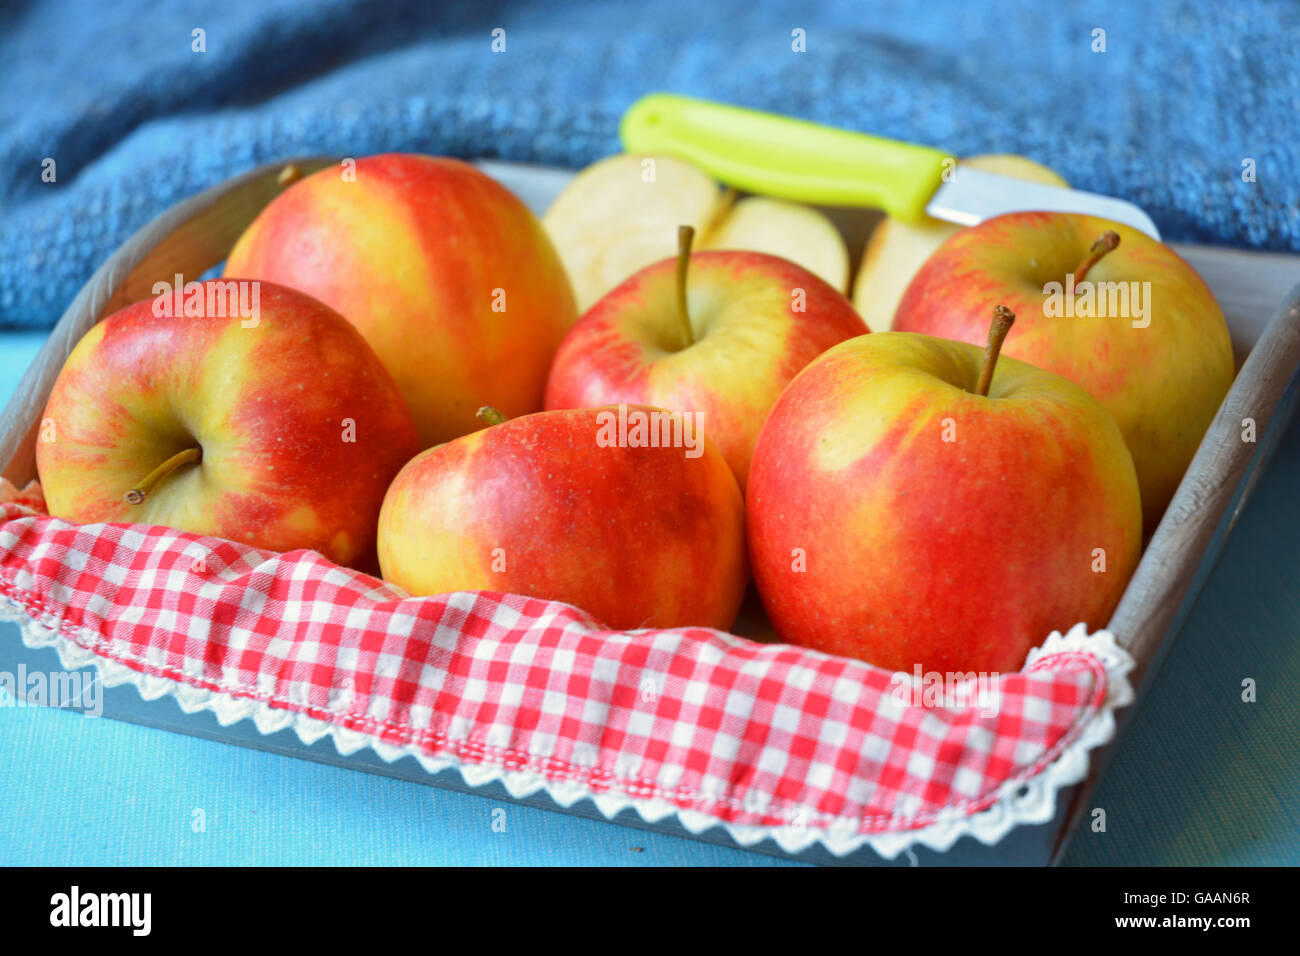 Brillantes cortadas frescas manzanas en una canasta de madera con un cuchillo y una tela a cuadros rojo y blanco Foto de stock